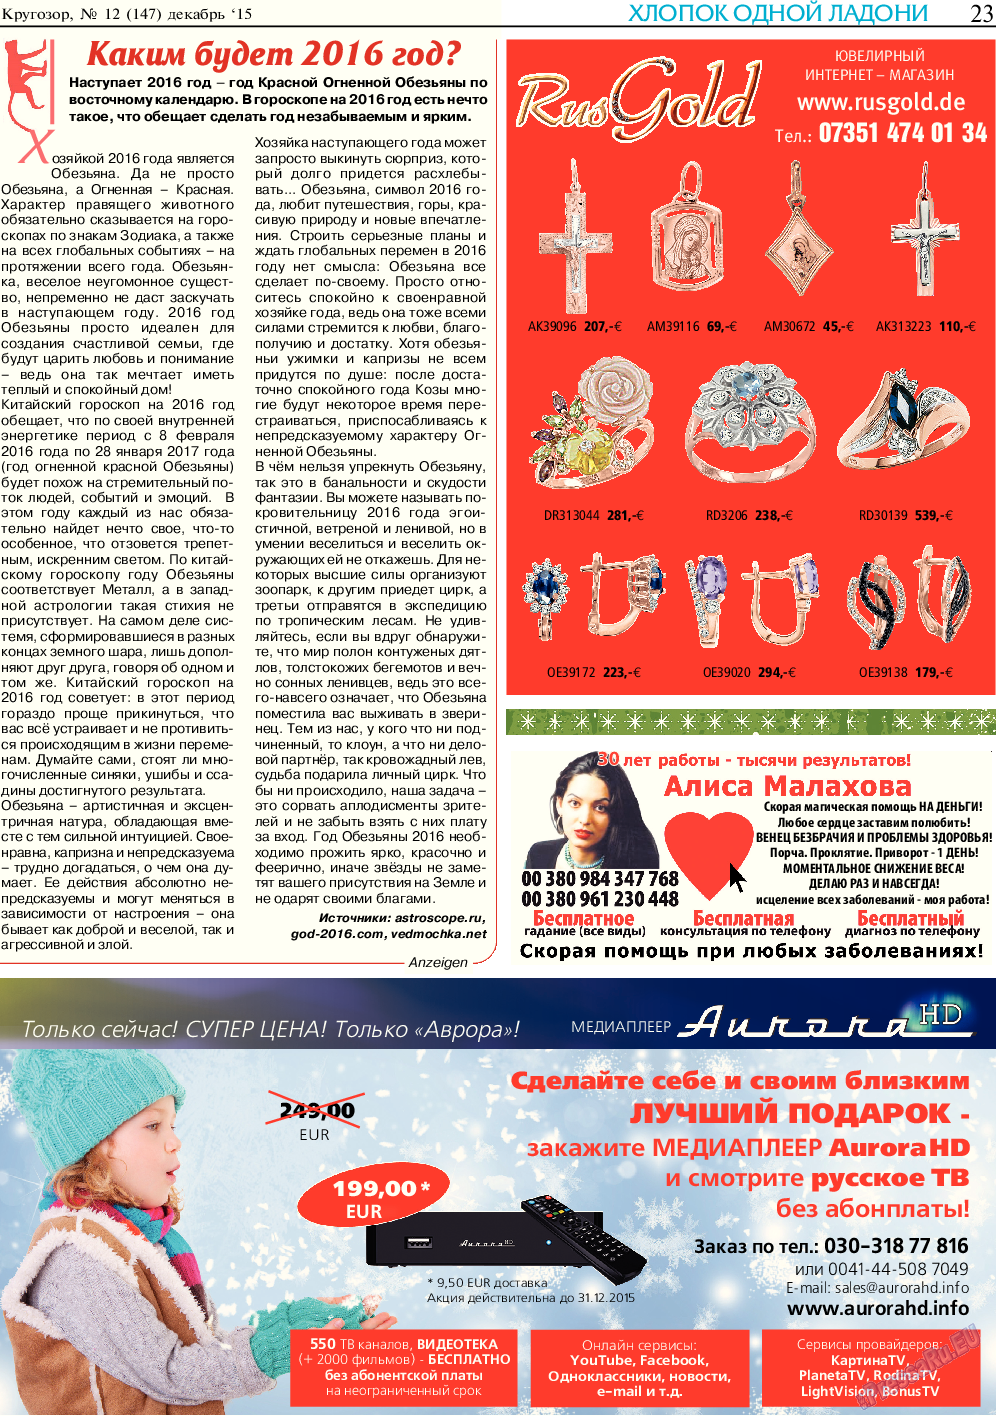 Кругозор, газета. 2015 №12 стр.23